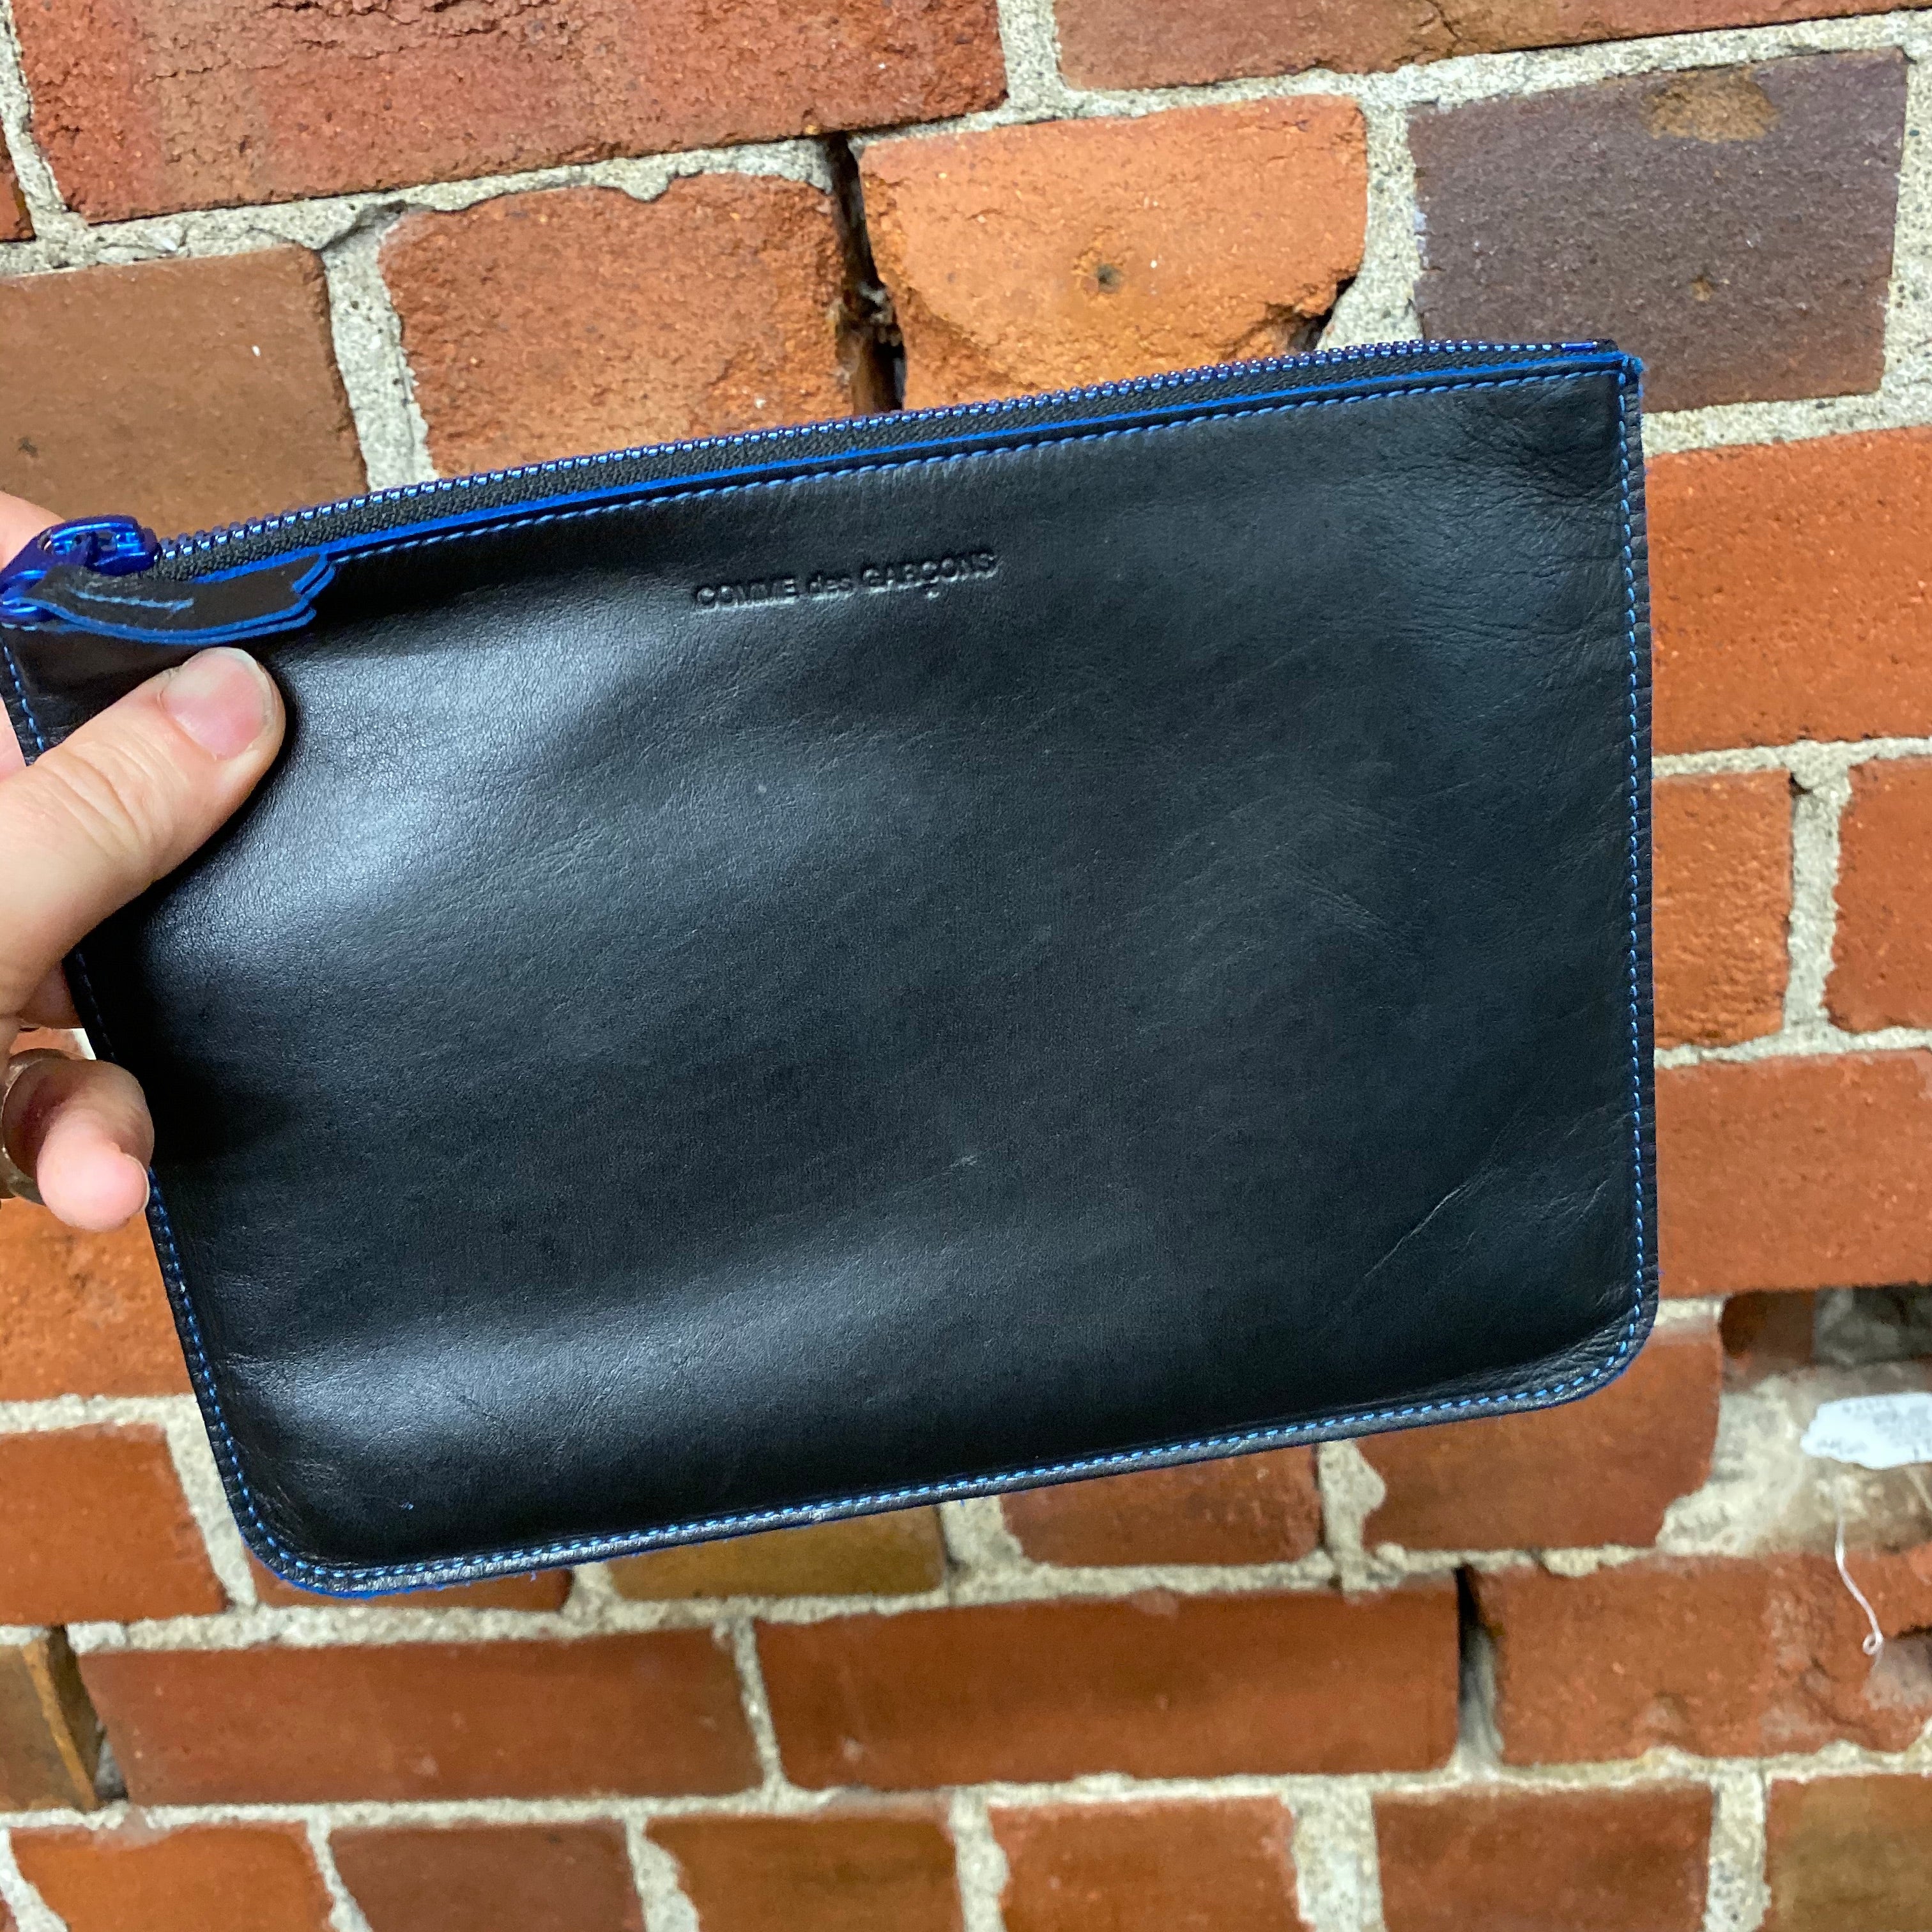 COMME DES GARCONS leather wallet